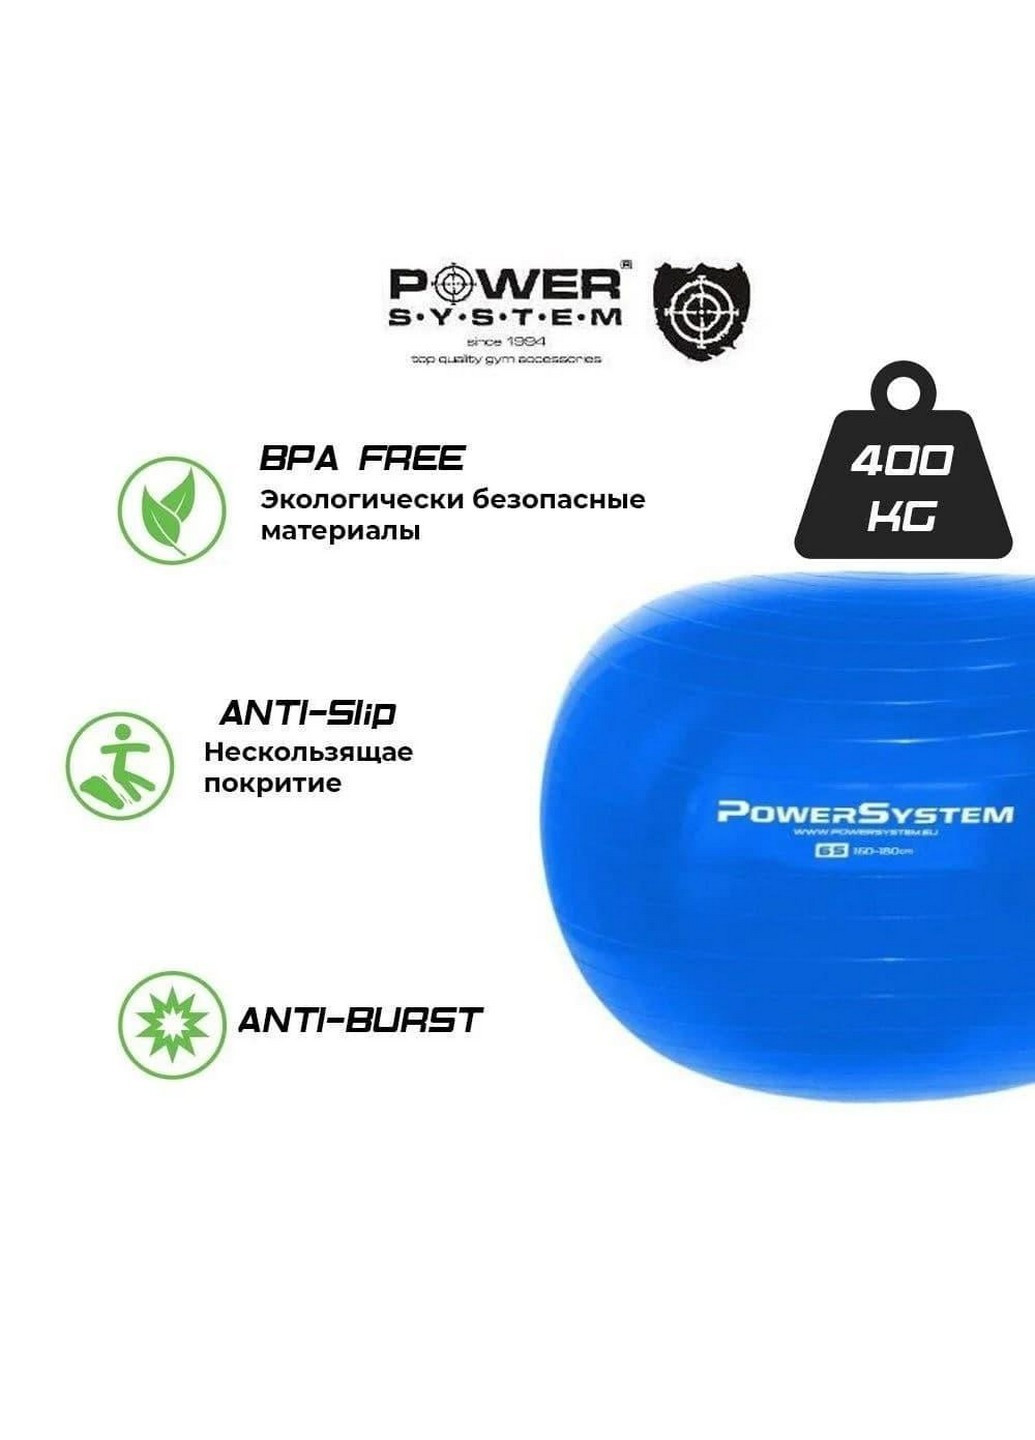 Мяч для фитнеса и гимнастики 55х55 см Power System (232677837)